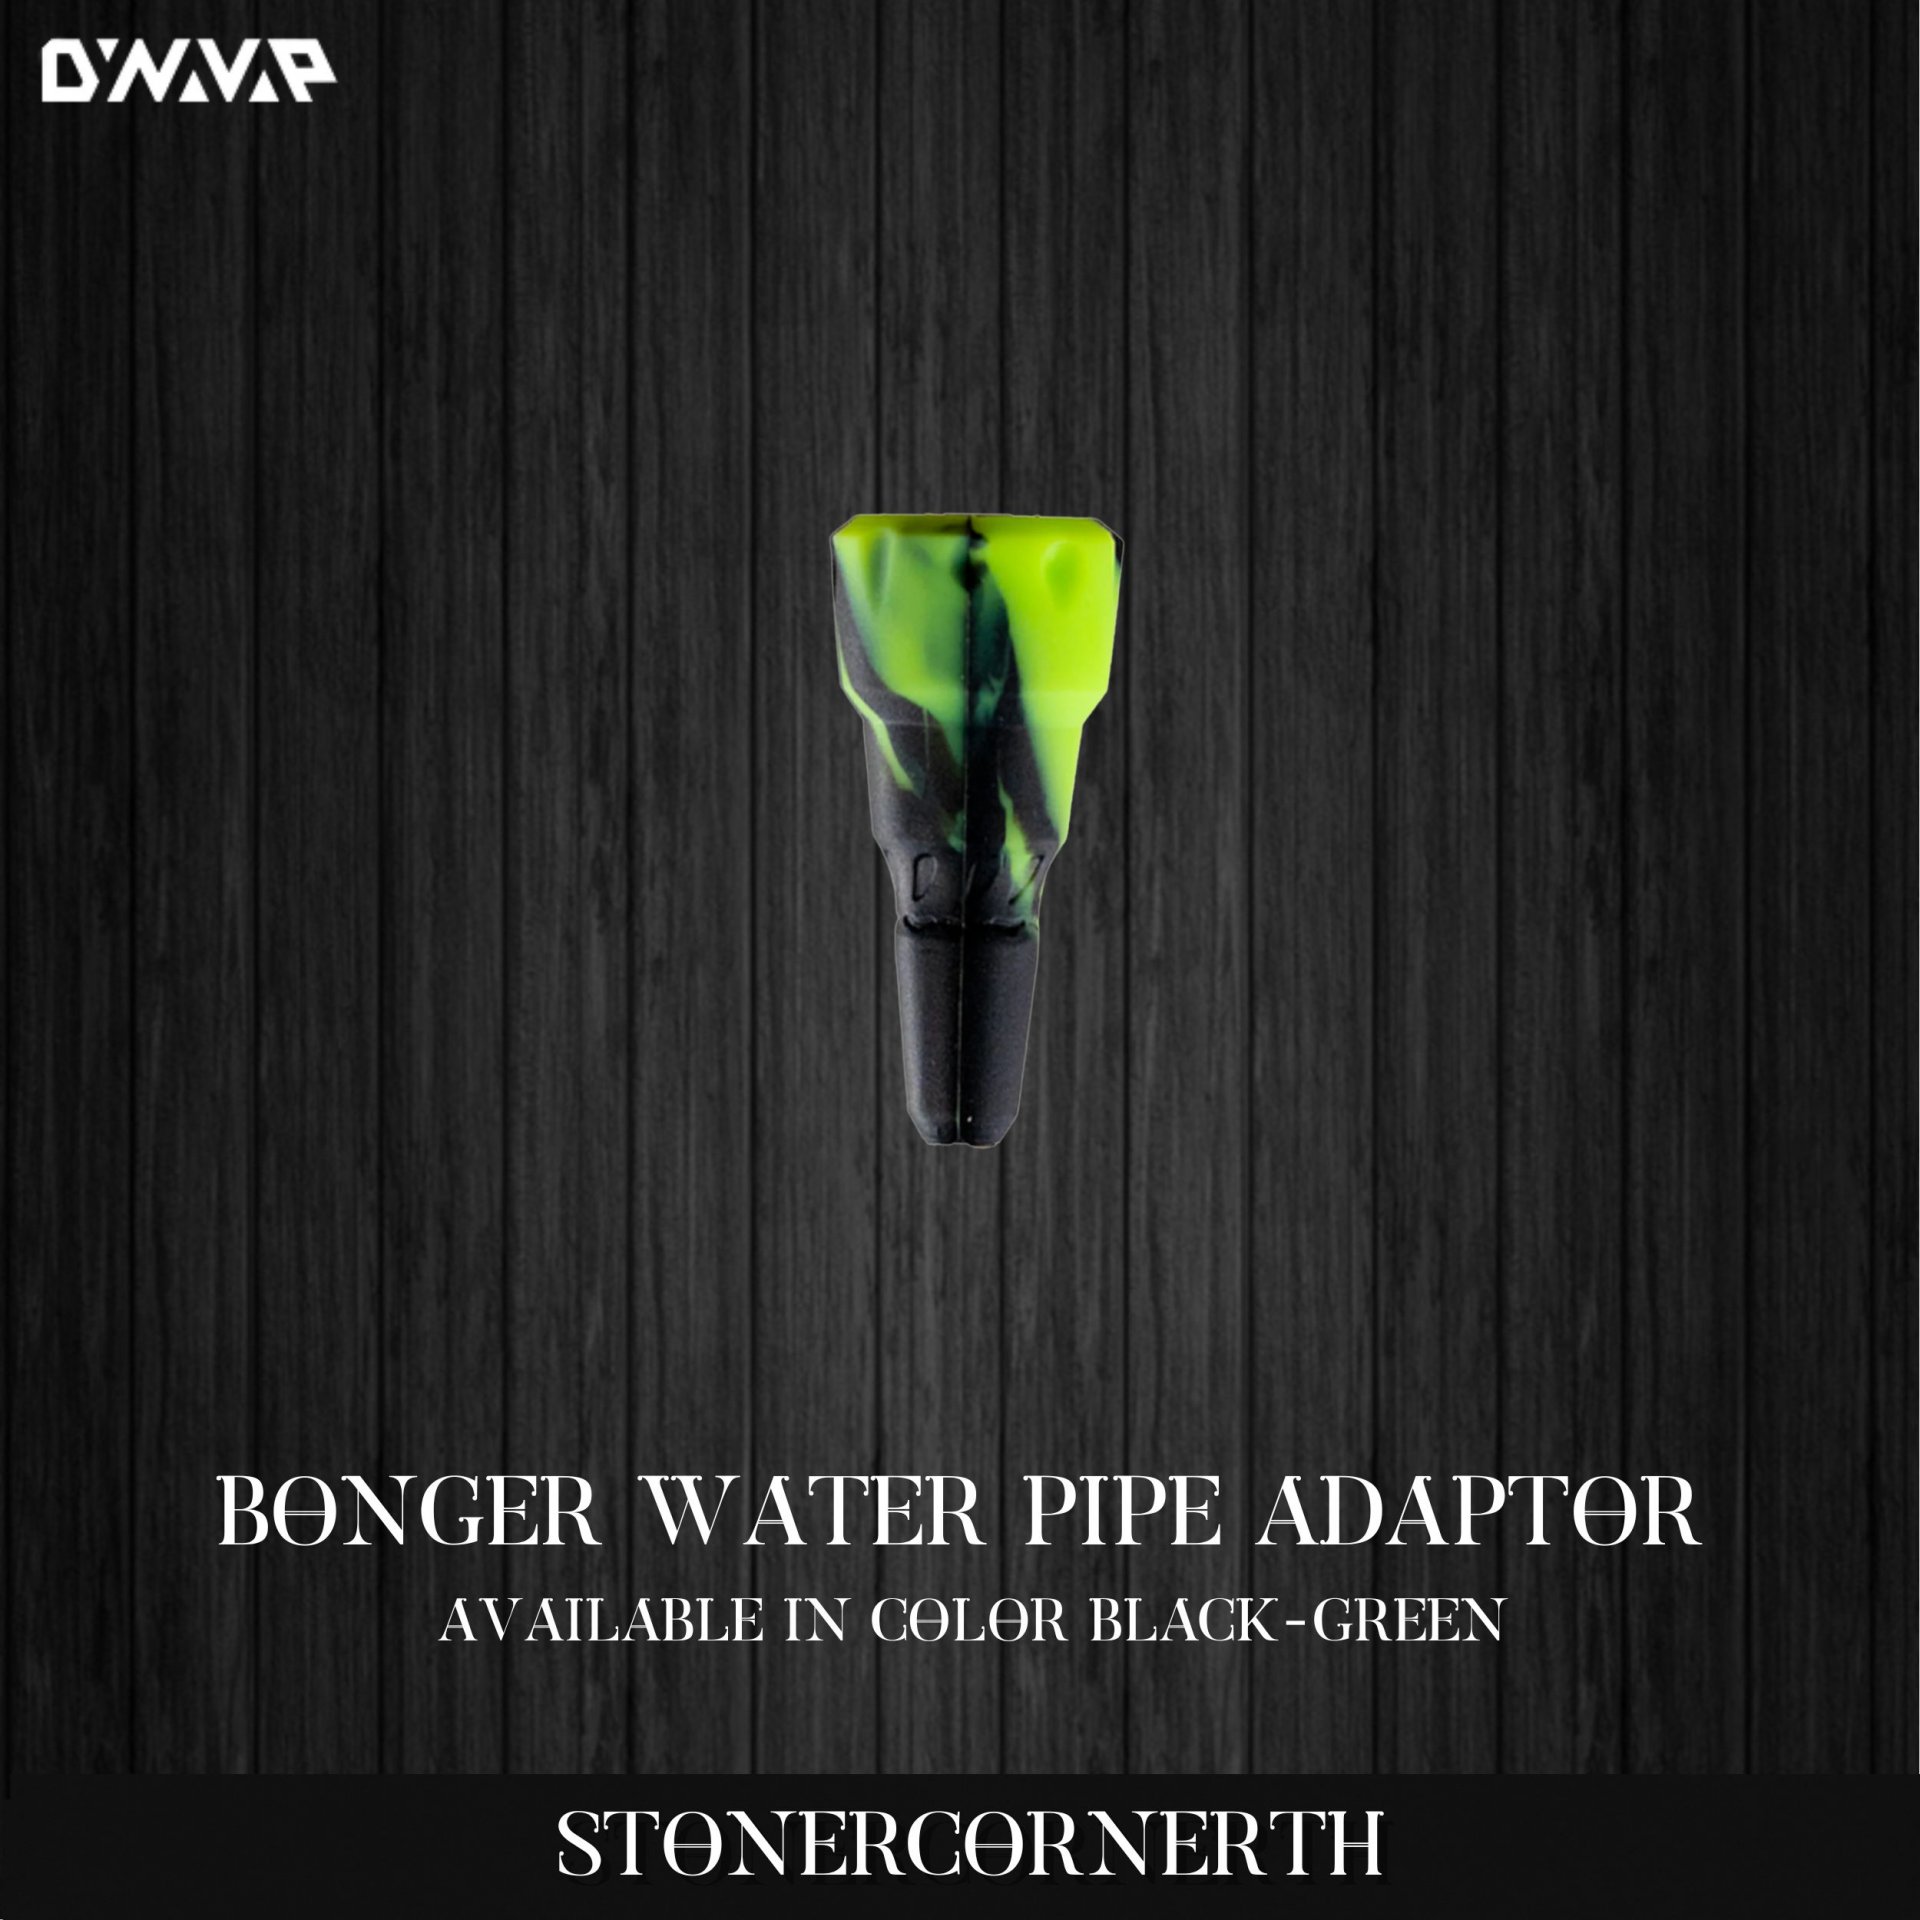 DYNAVAP Bonger Water Pipe Adaptor